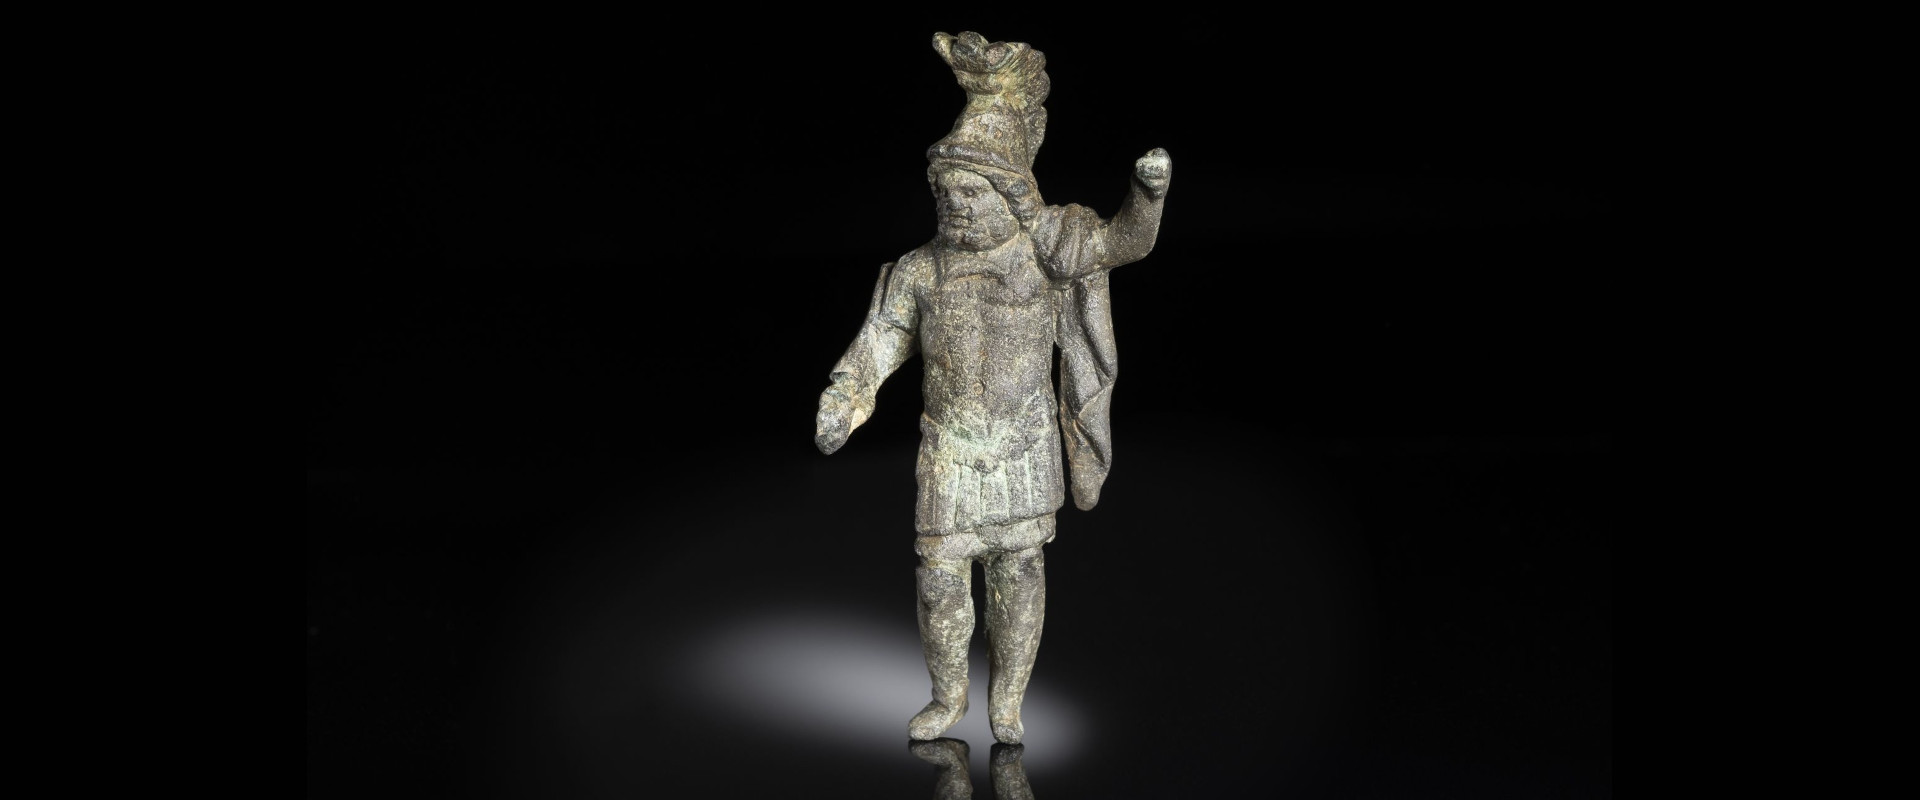 Statuette zeigt bislang unbekannten Typus